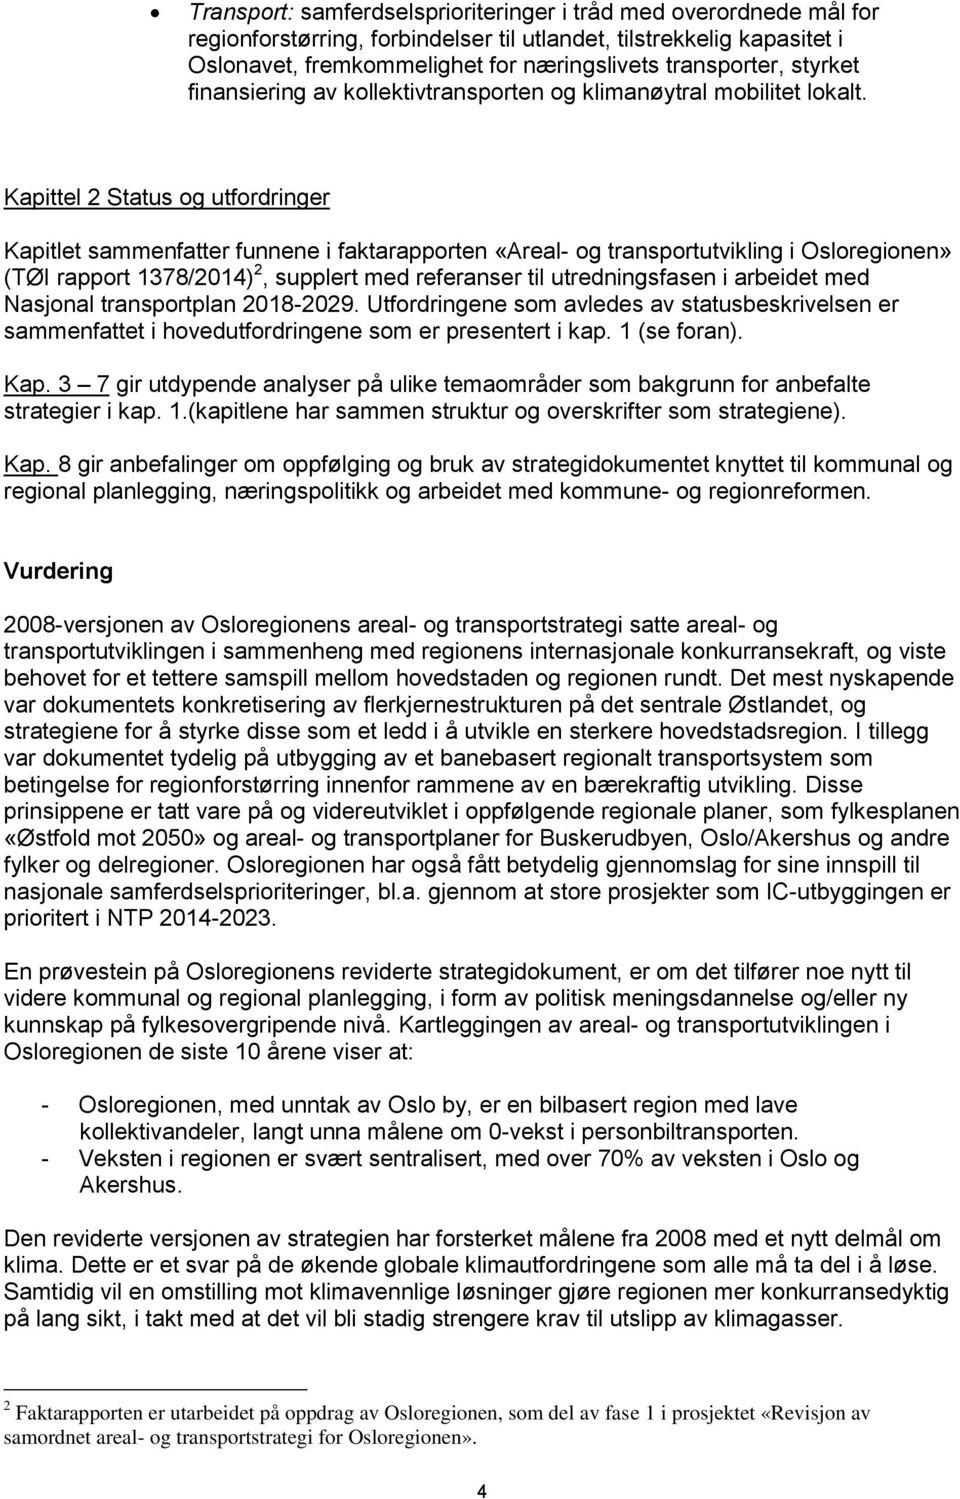 Kapittel 2 Status og utfordringer Kapitlet sammenfatter funnene i faktarapporten «Areal- og transportutvikling i Osloregionen» (TØI rapport 1378/2014) 2, supplert med referanser til utredningsfasen i